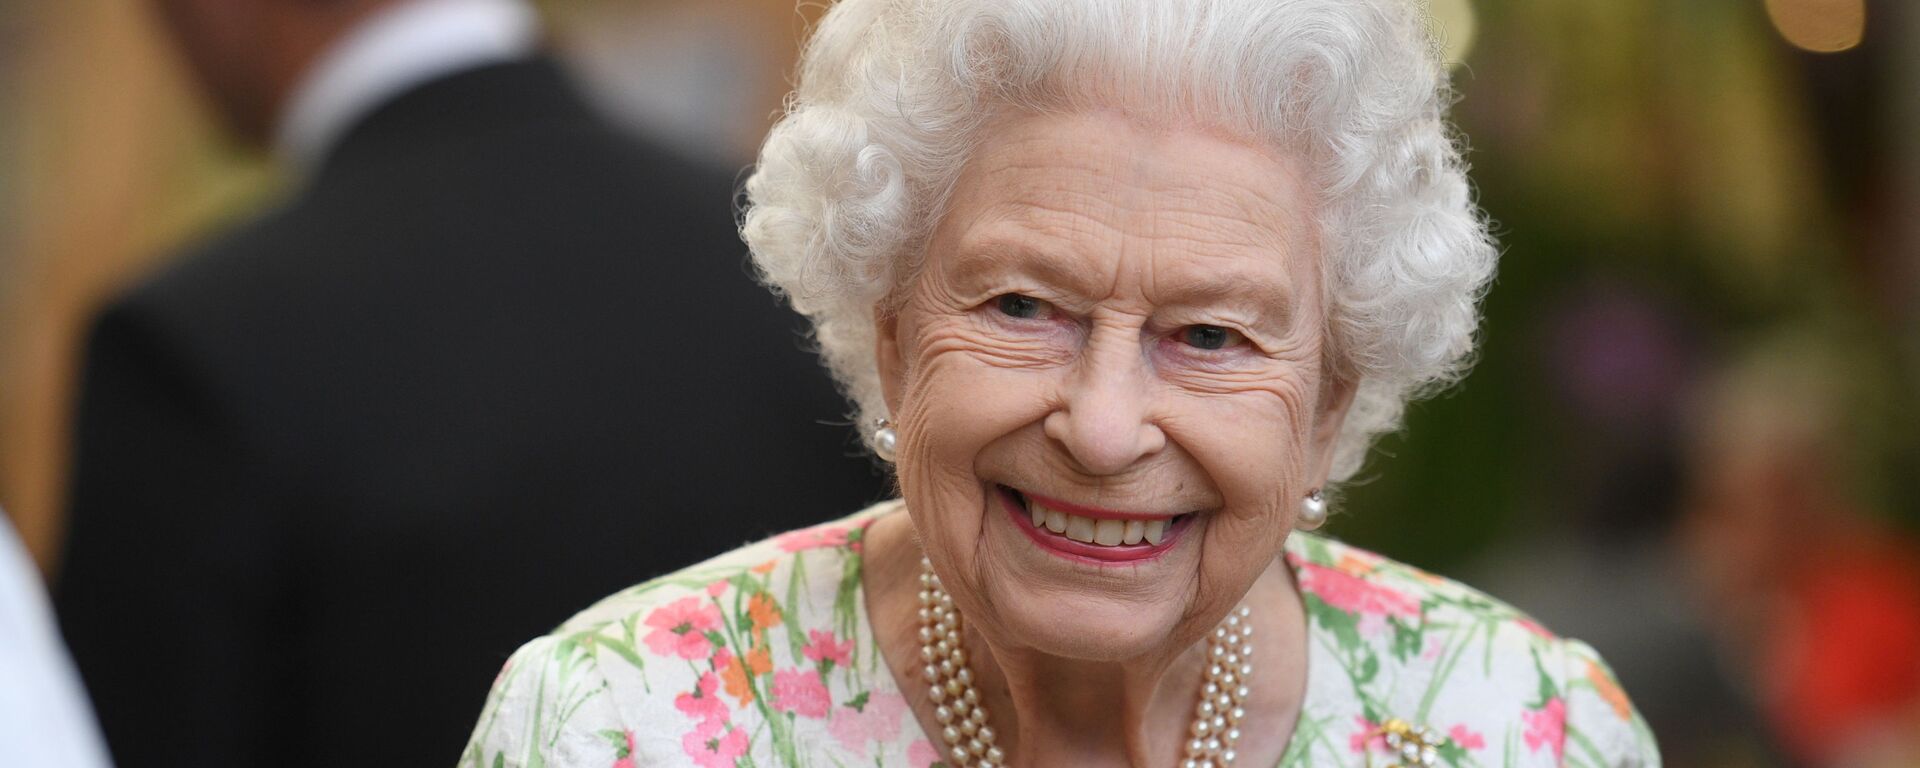 ملكة بريطانيا، إليزابيث الثانية، تحضر حفل استقبال على هامش قمة مجموعة السبع، في كورنوال، بريطانيا، 11 يونيو/ حزيران 2021 - سبوتنيك عربي, 1920, 03.08.2021